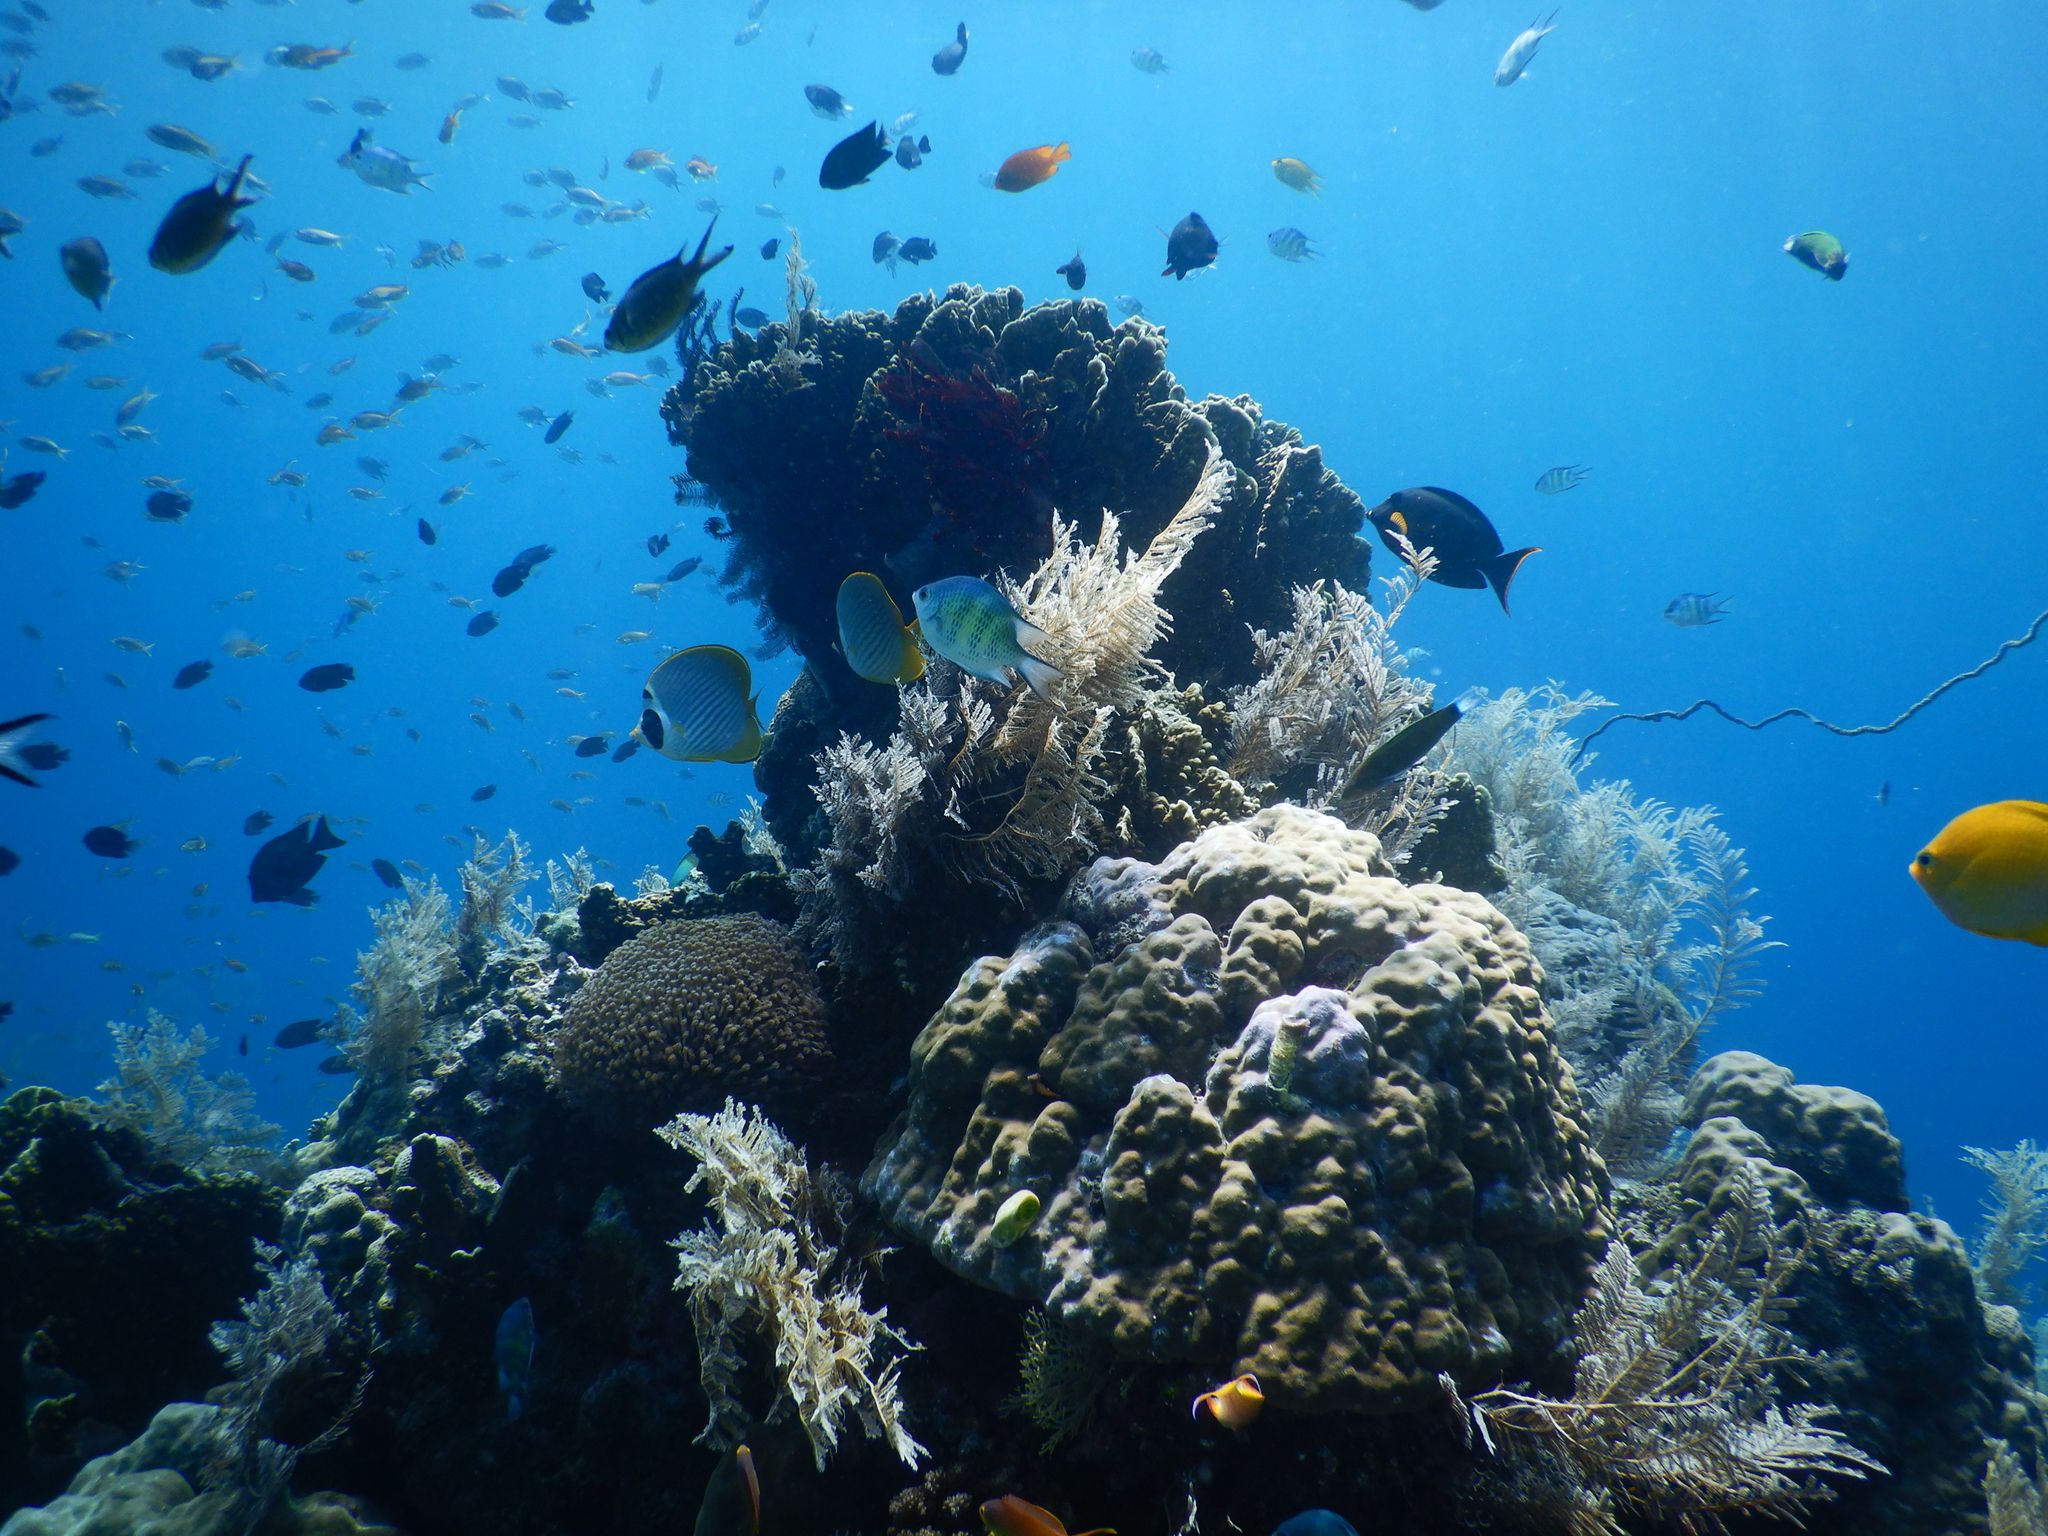 時間をかけて保護してきた「珊瑚礁保護区」には、たくさんの生き物が溢れています。